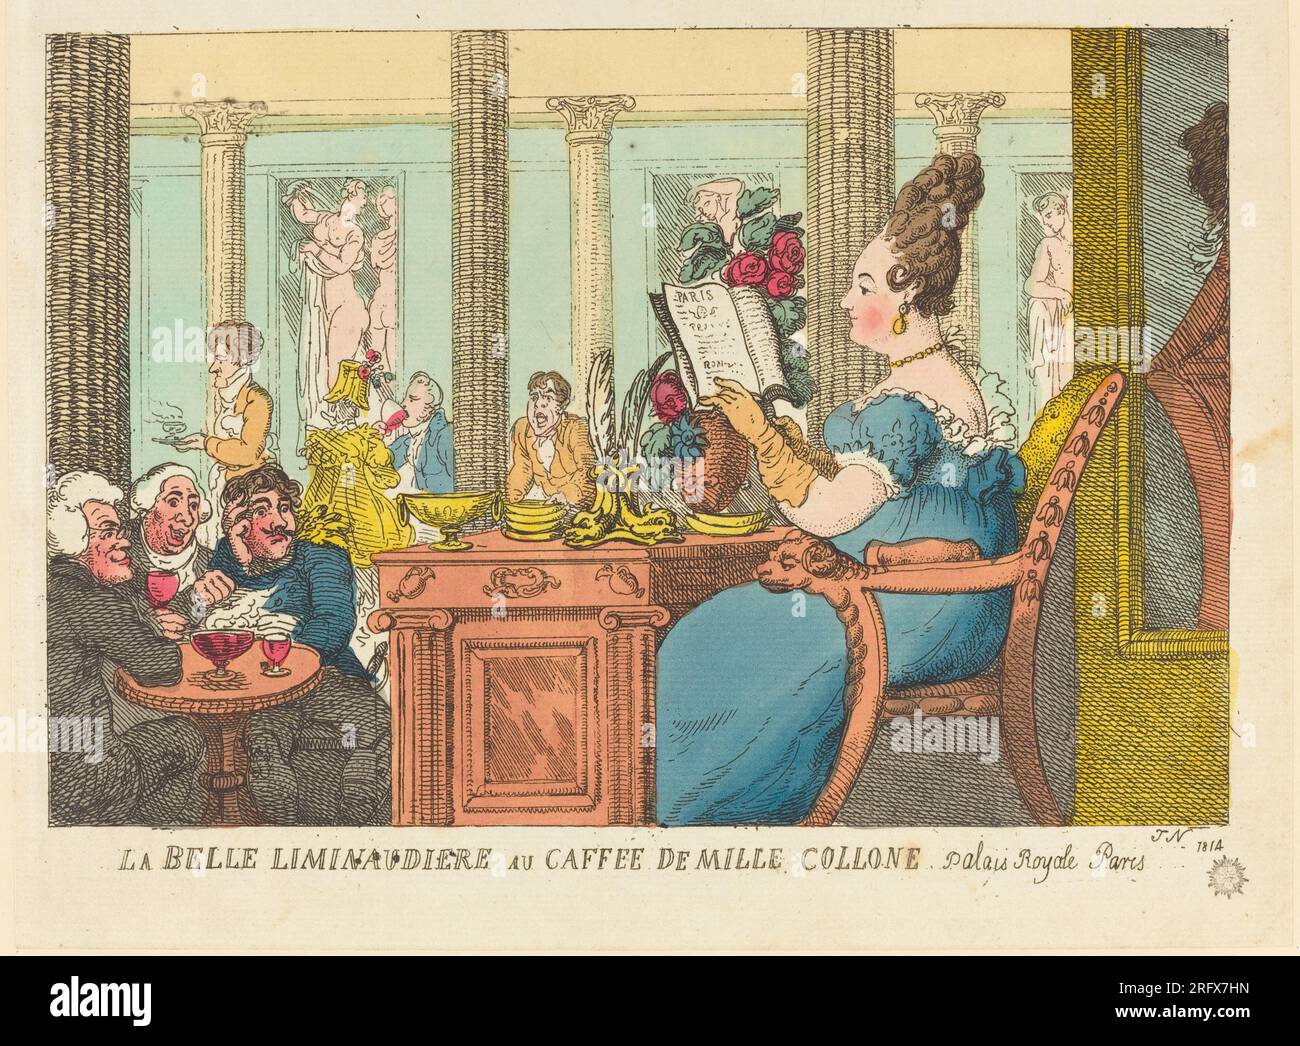 'Thomas Rowlandson, La Belle Limonaudiere au Cafe des Mille Colonnes, Palais Royal, Paris, 1814, hand-colored etching, Rosenwald Collection, 1945.5.1254.b' Stock Photo